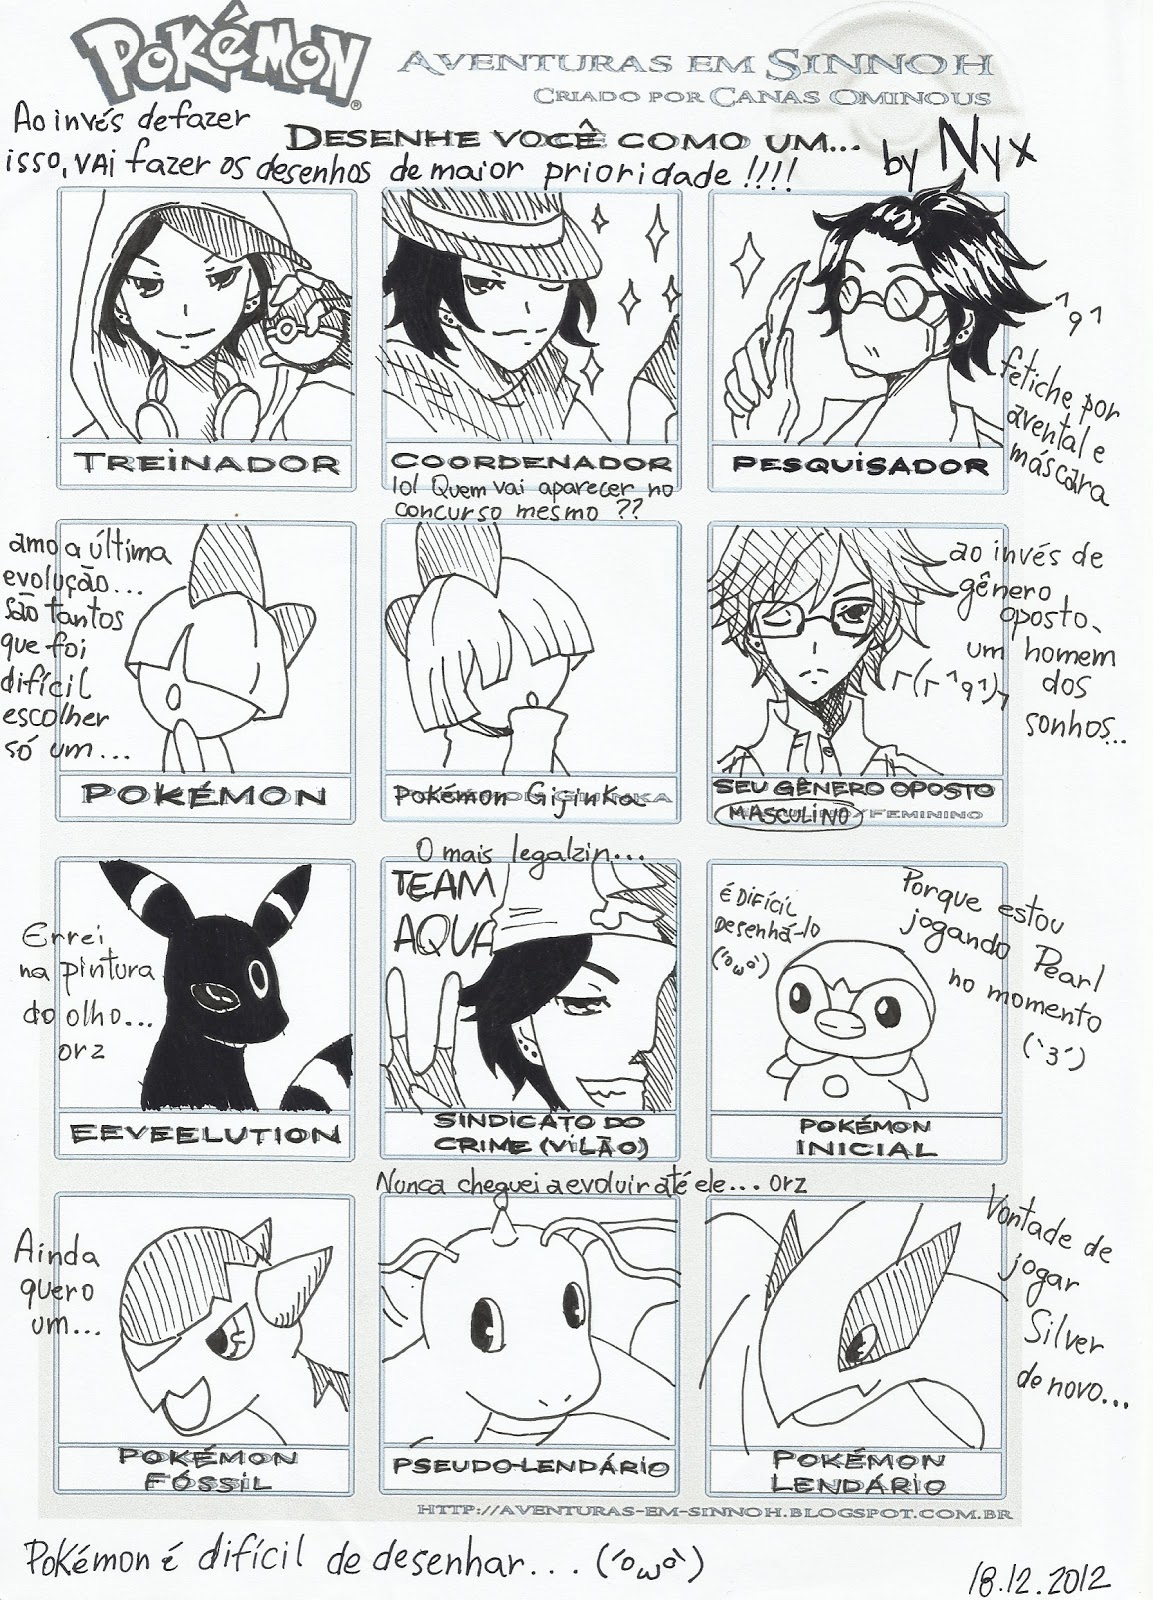 escolham um desses pokemons para eu desenhar.